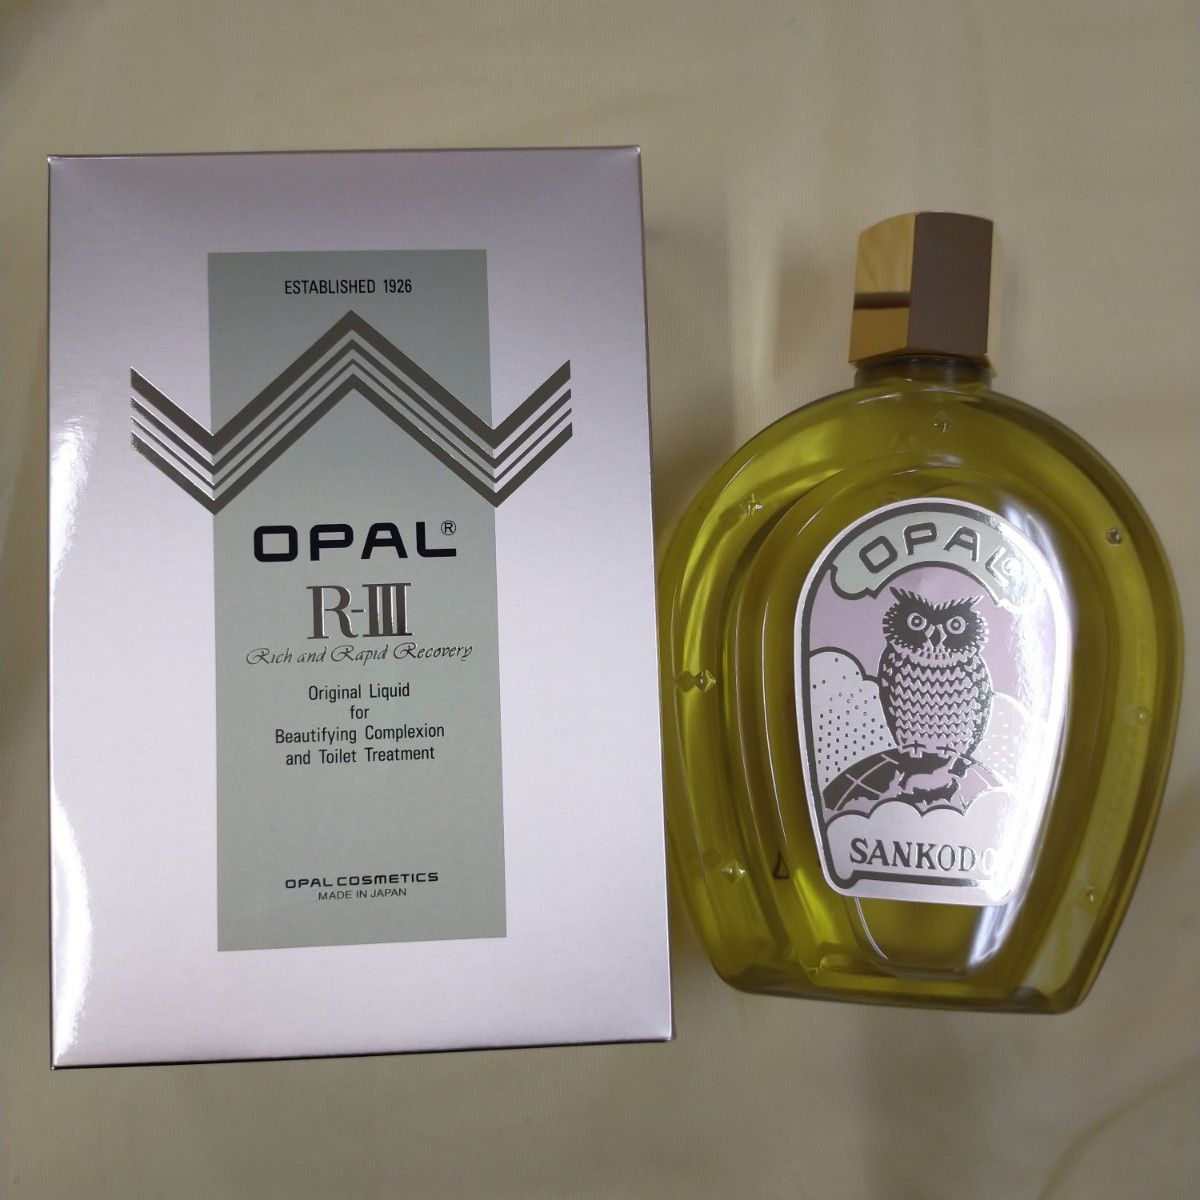 オパールR-3美容原液150ml